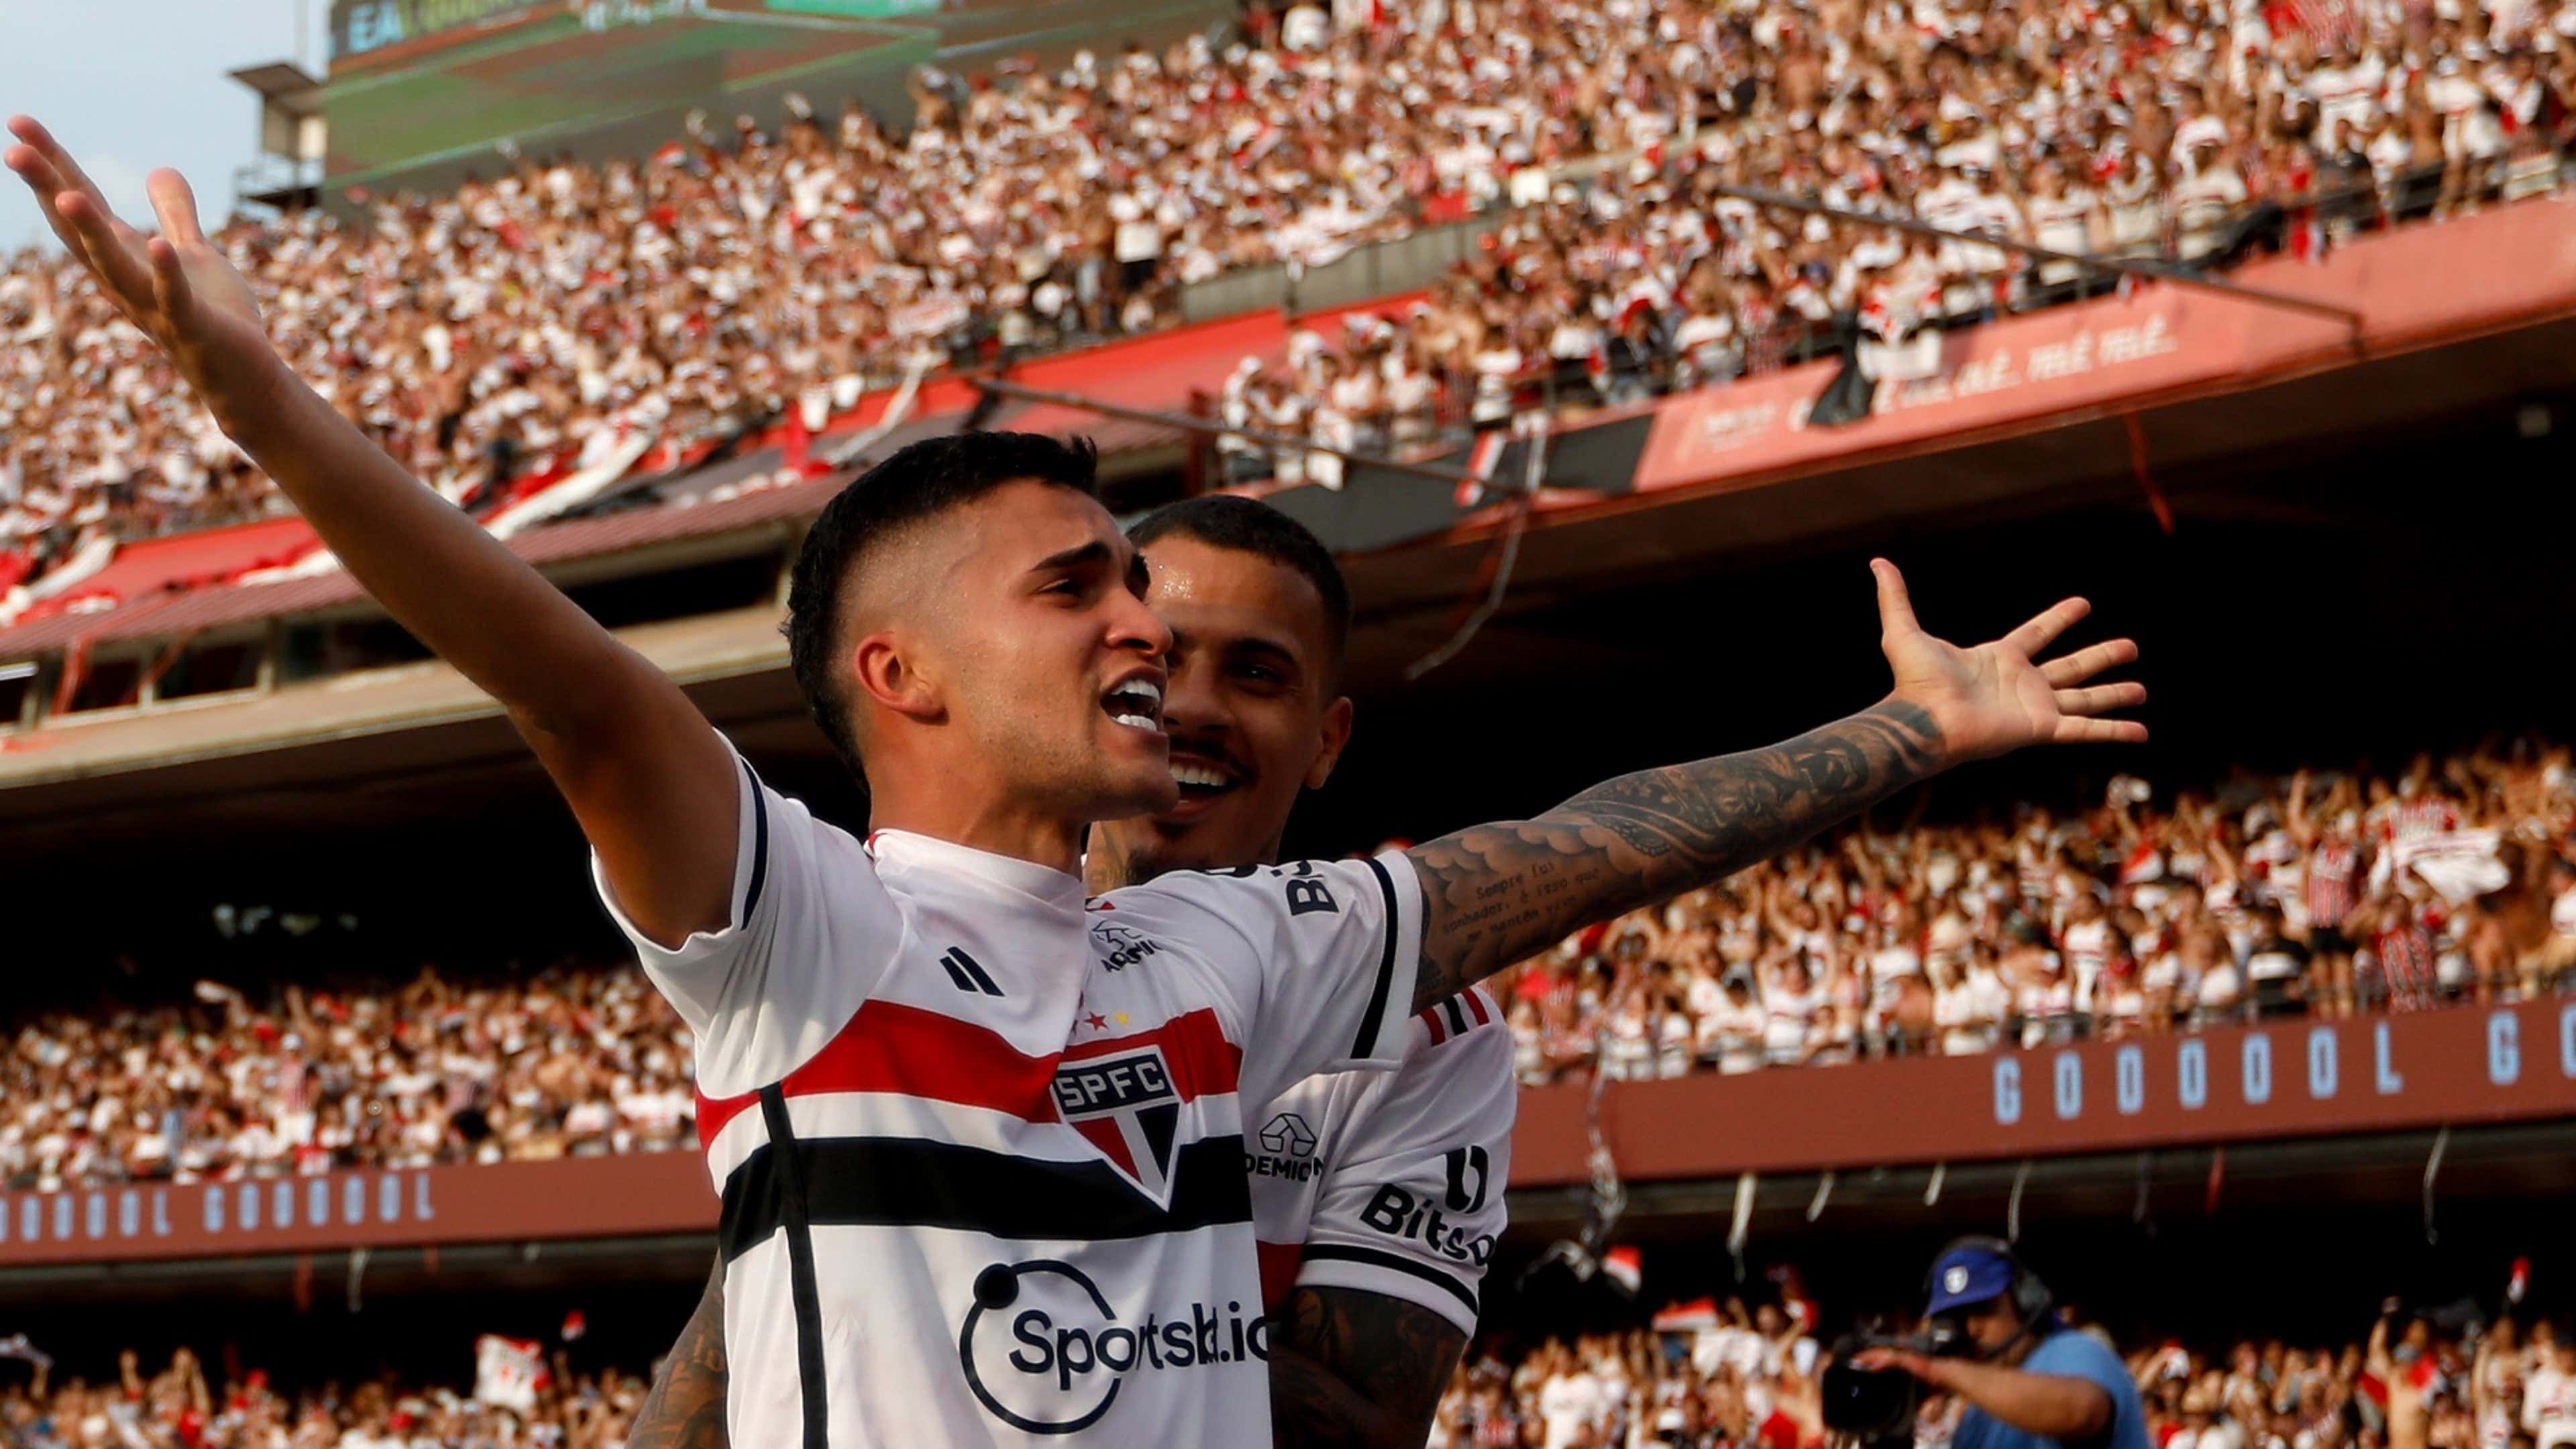 Ainda sem data, Copa Paulista terá 32 clubes e mais Confira as